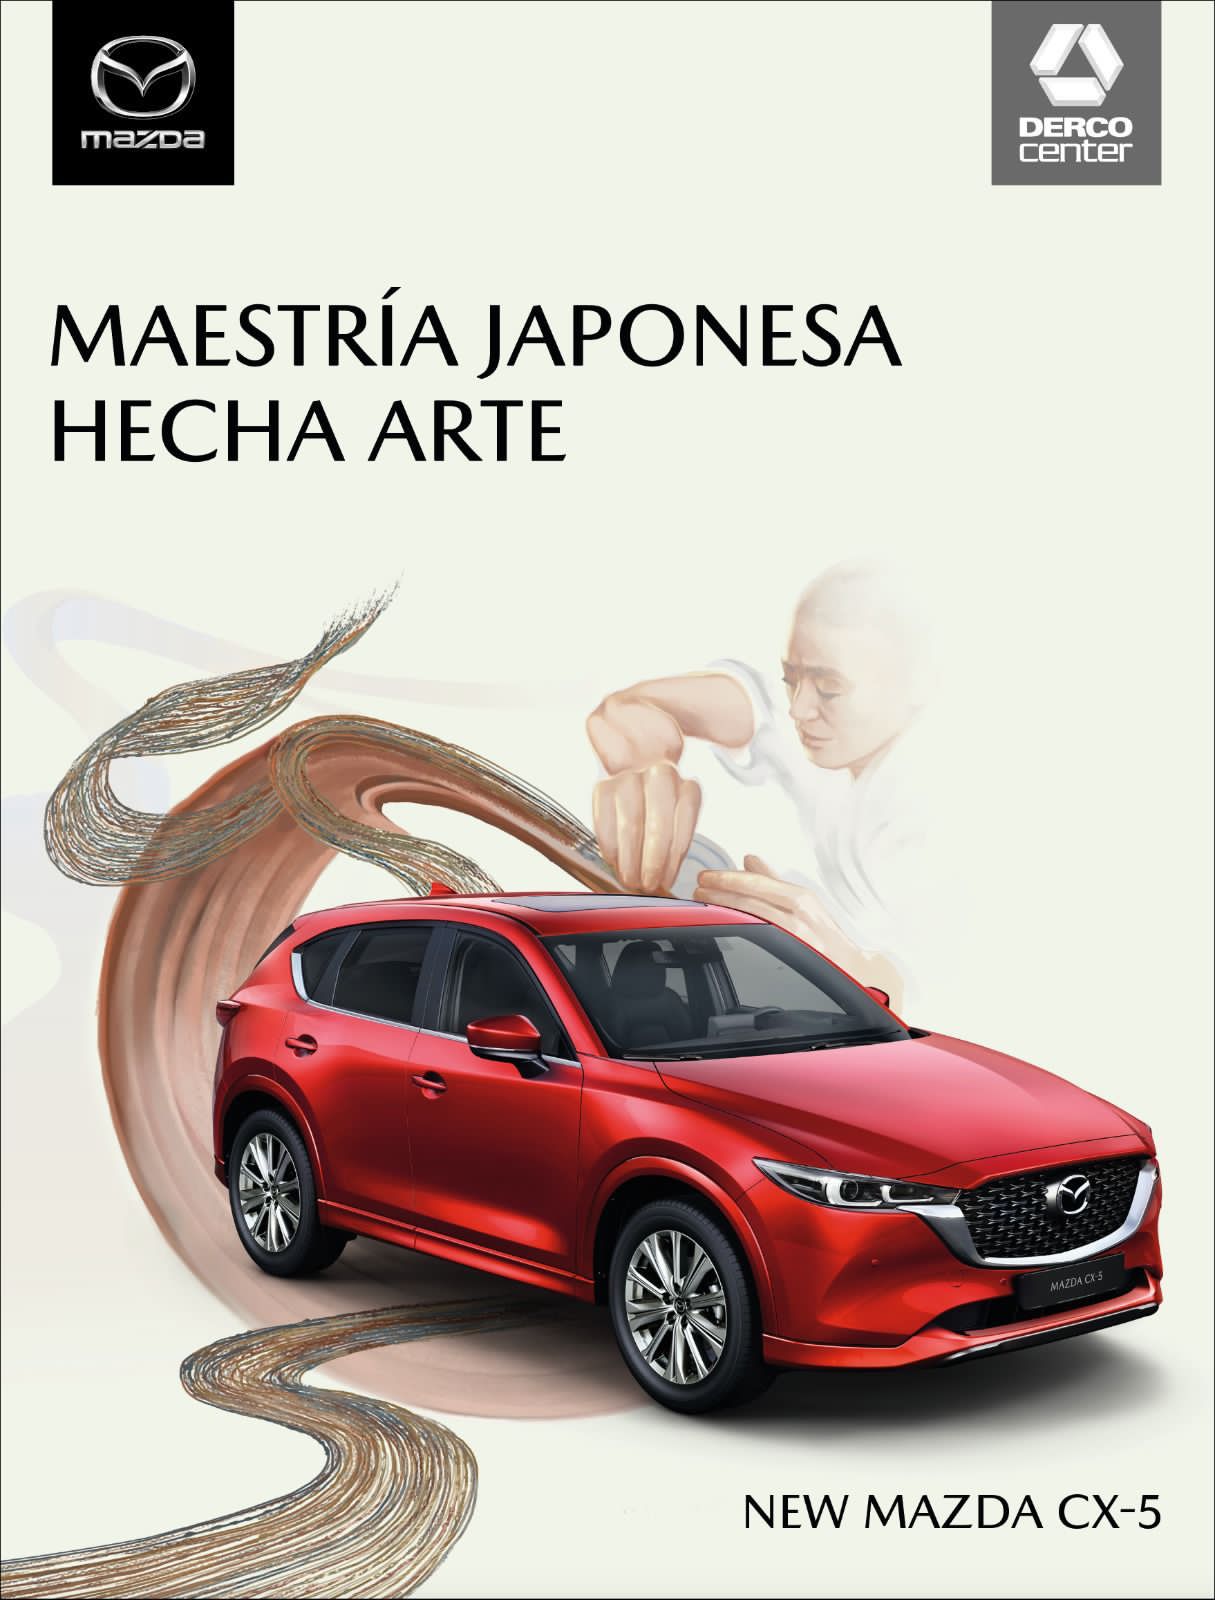 Mazda 3: Conoce su tecnología y diseño mundialmente reconocido